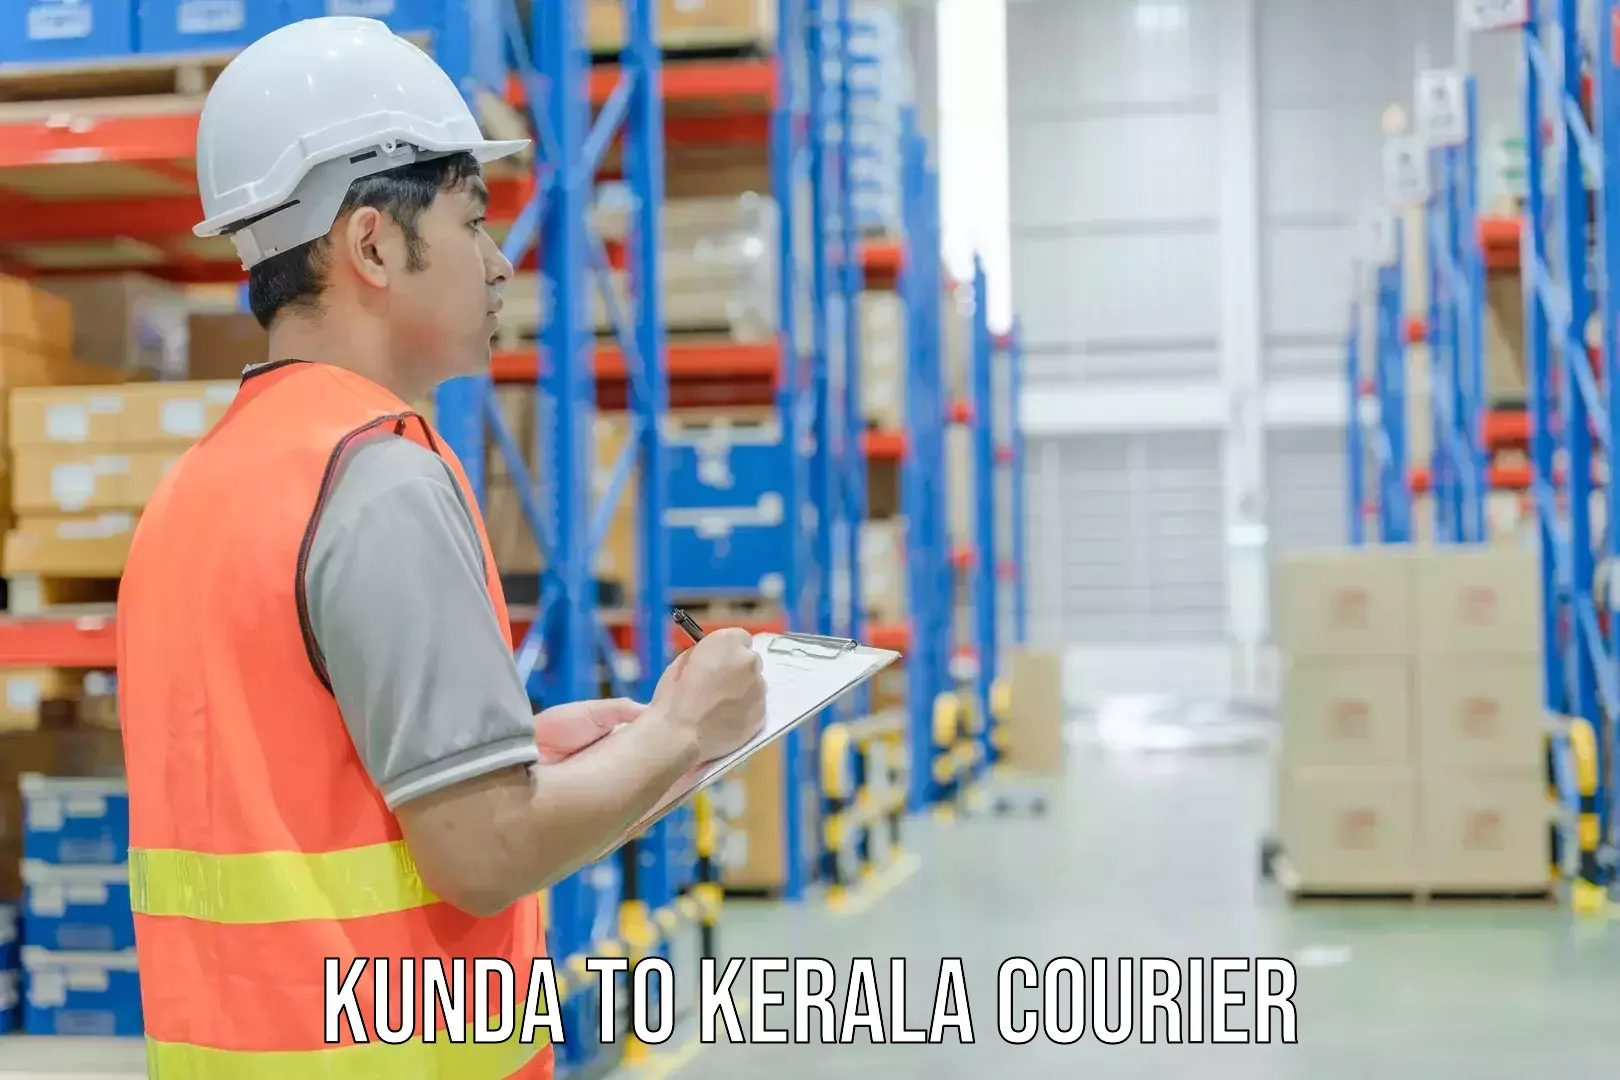 Express logistics service Kunda to Mundakayam